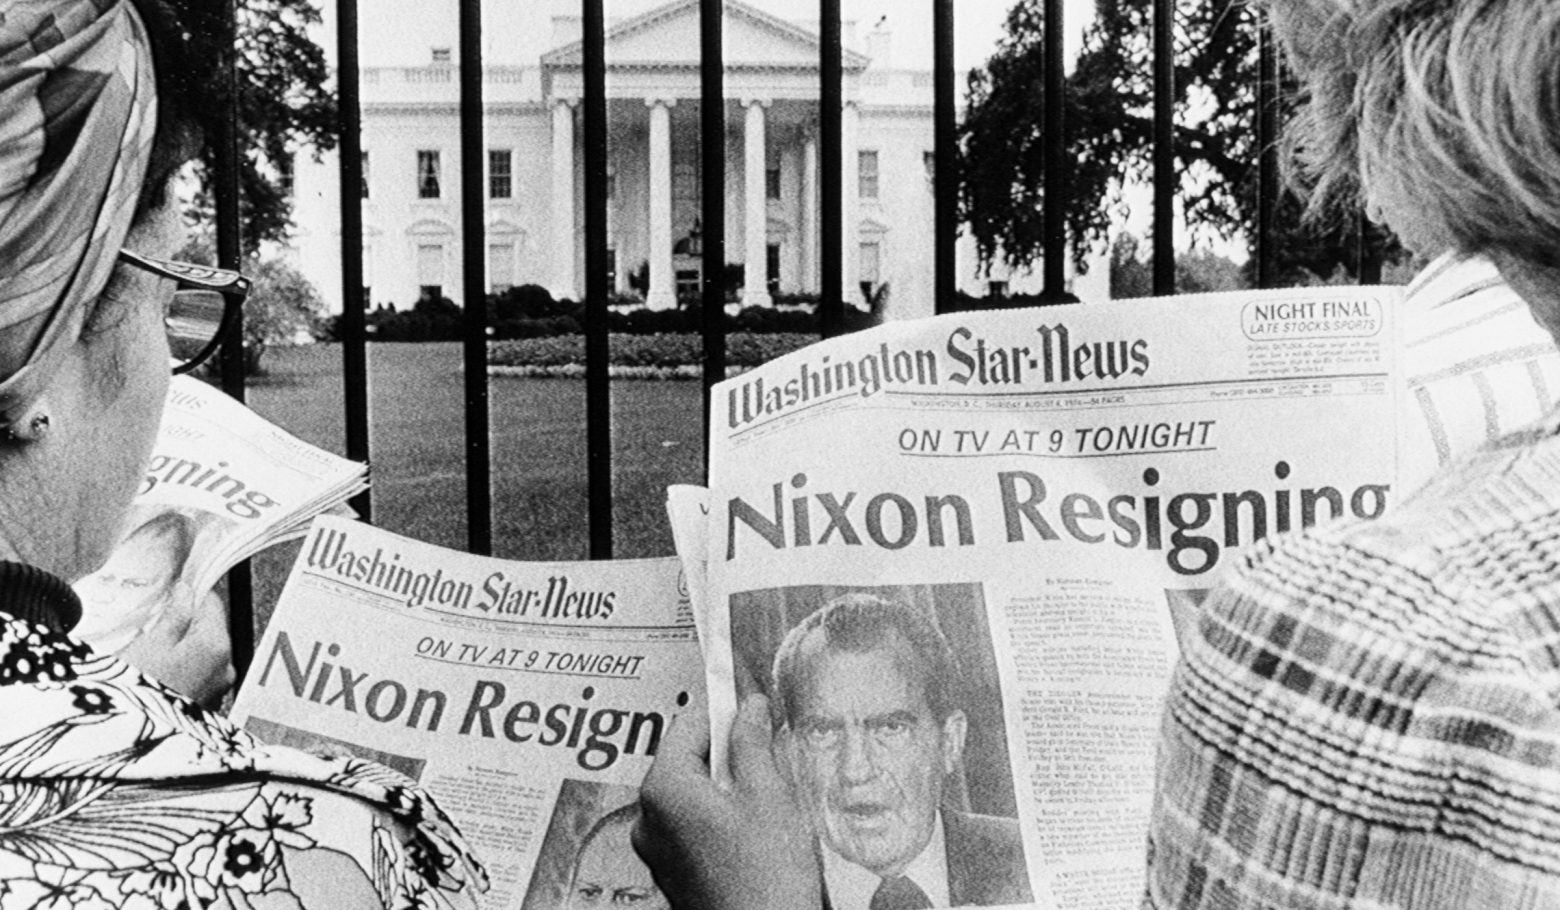 Το σκάνδαλο Watergate που οδήγησε τον Νίξον στην παραίτηση - Οι ηχογραφήσεις, οι παρακολουθήσεις και παγίδες